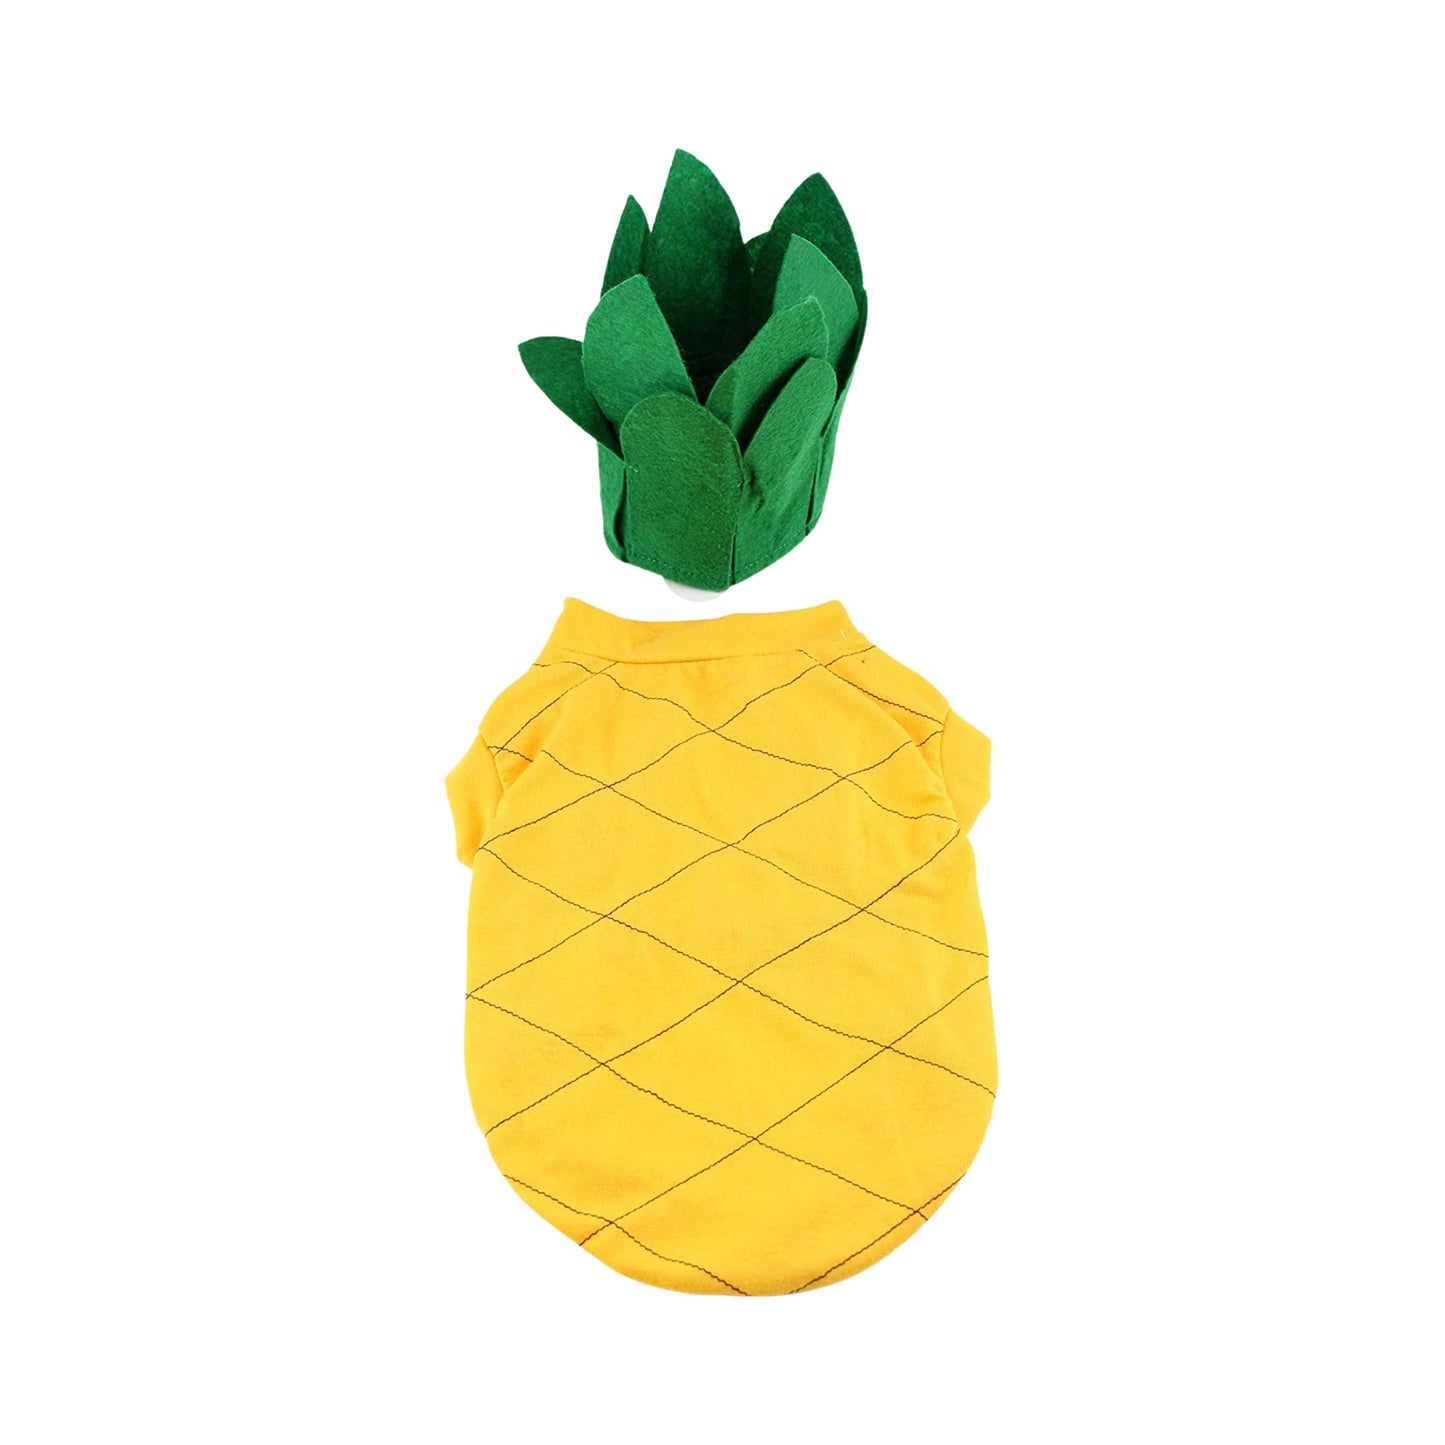 Midlee Pineapple Dog Costume